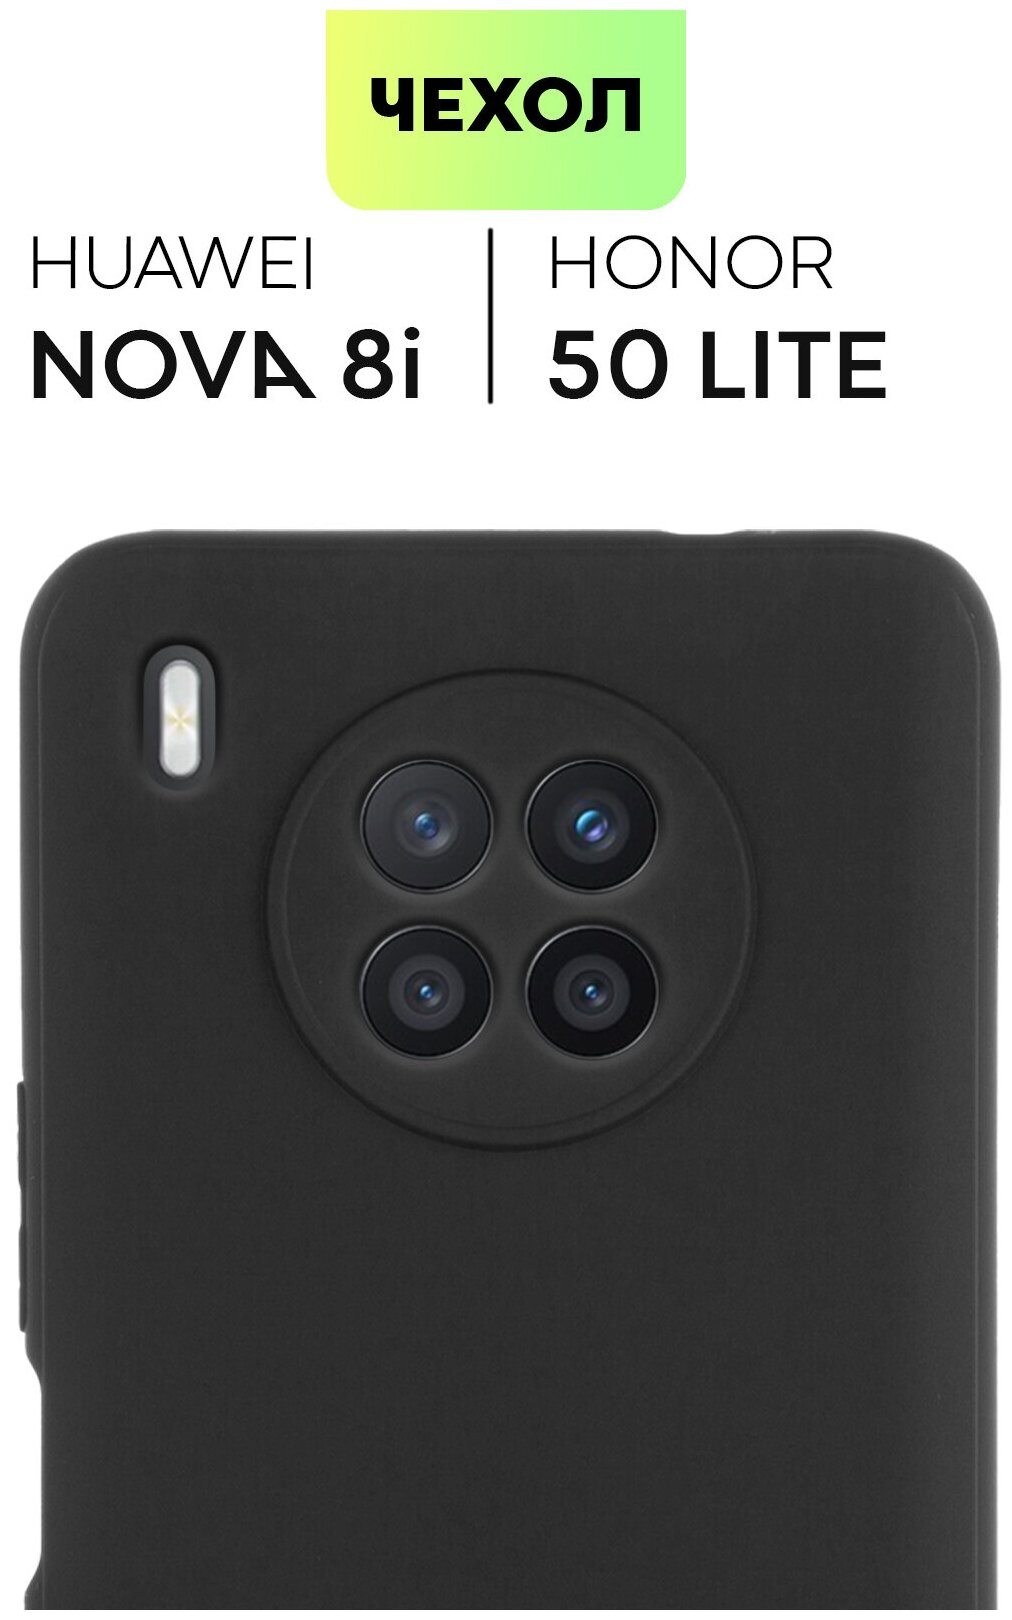 Чехол для Huawei Nova 8i и Honor 50 Lite (Хуавей Нова 8 ай и Хонор 50 Лайт) тонкий, силиконовый чехол, матовое покрытие, защита модуля камер, черный